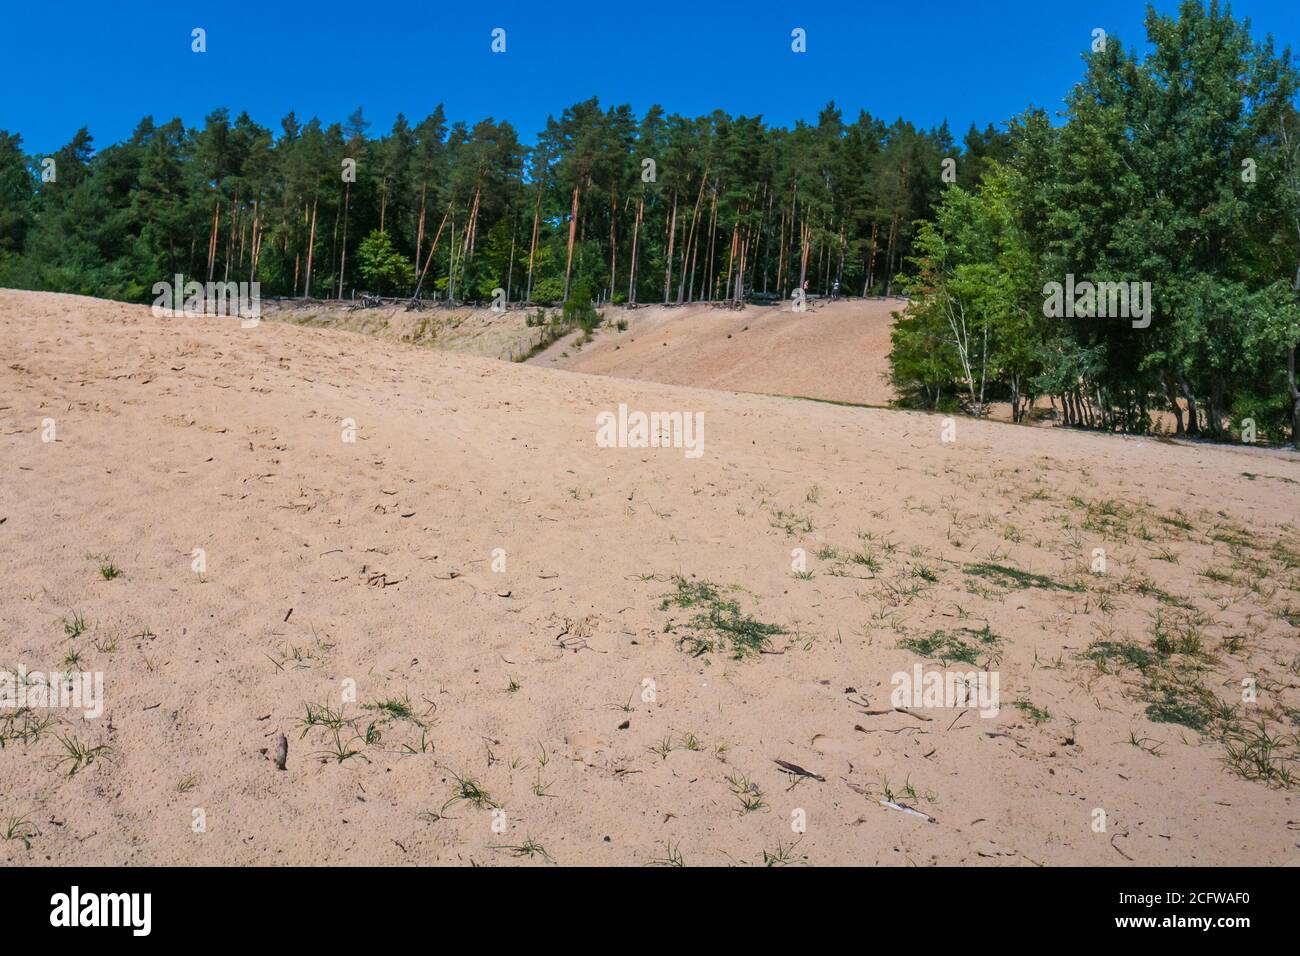 Dunes de sable dans la forêt, une réserve naturelle et un habitat faunique urbain. 'Im Jagen' sandfoits à la forêt de Grunewald, Berlin, Allemagne. Banque D'Images